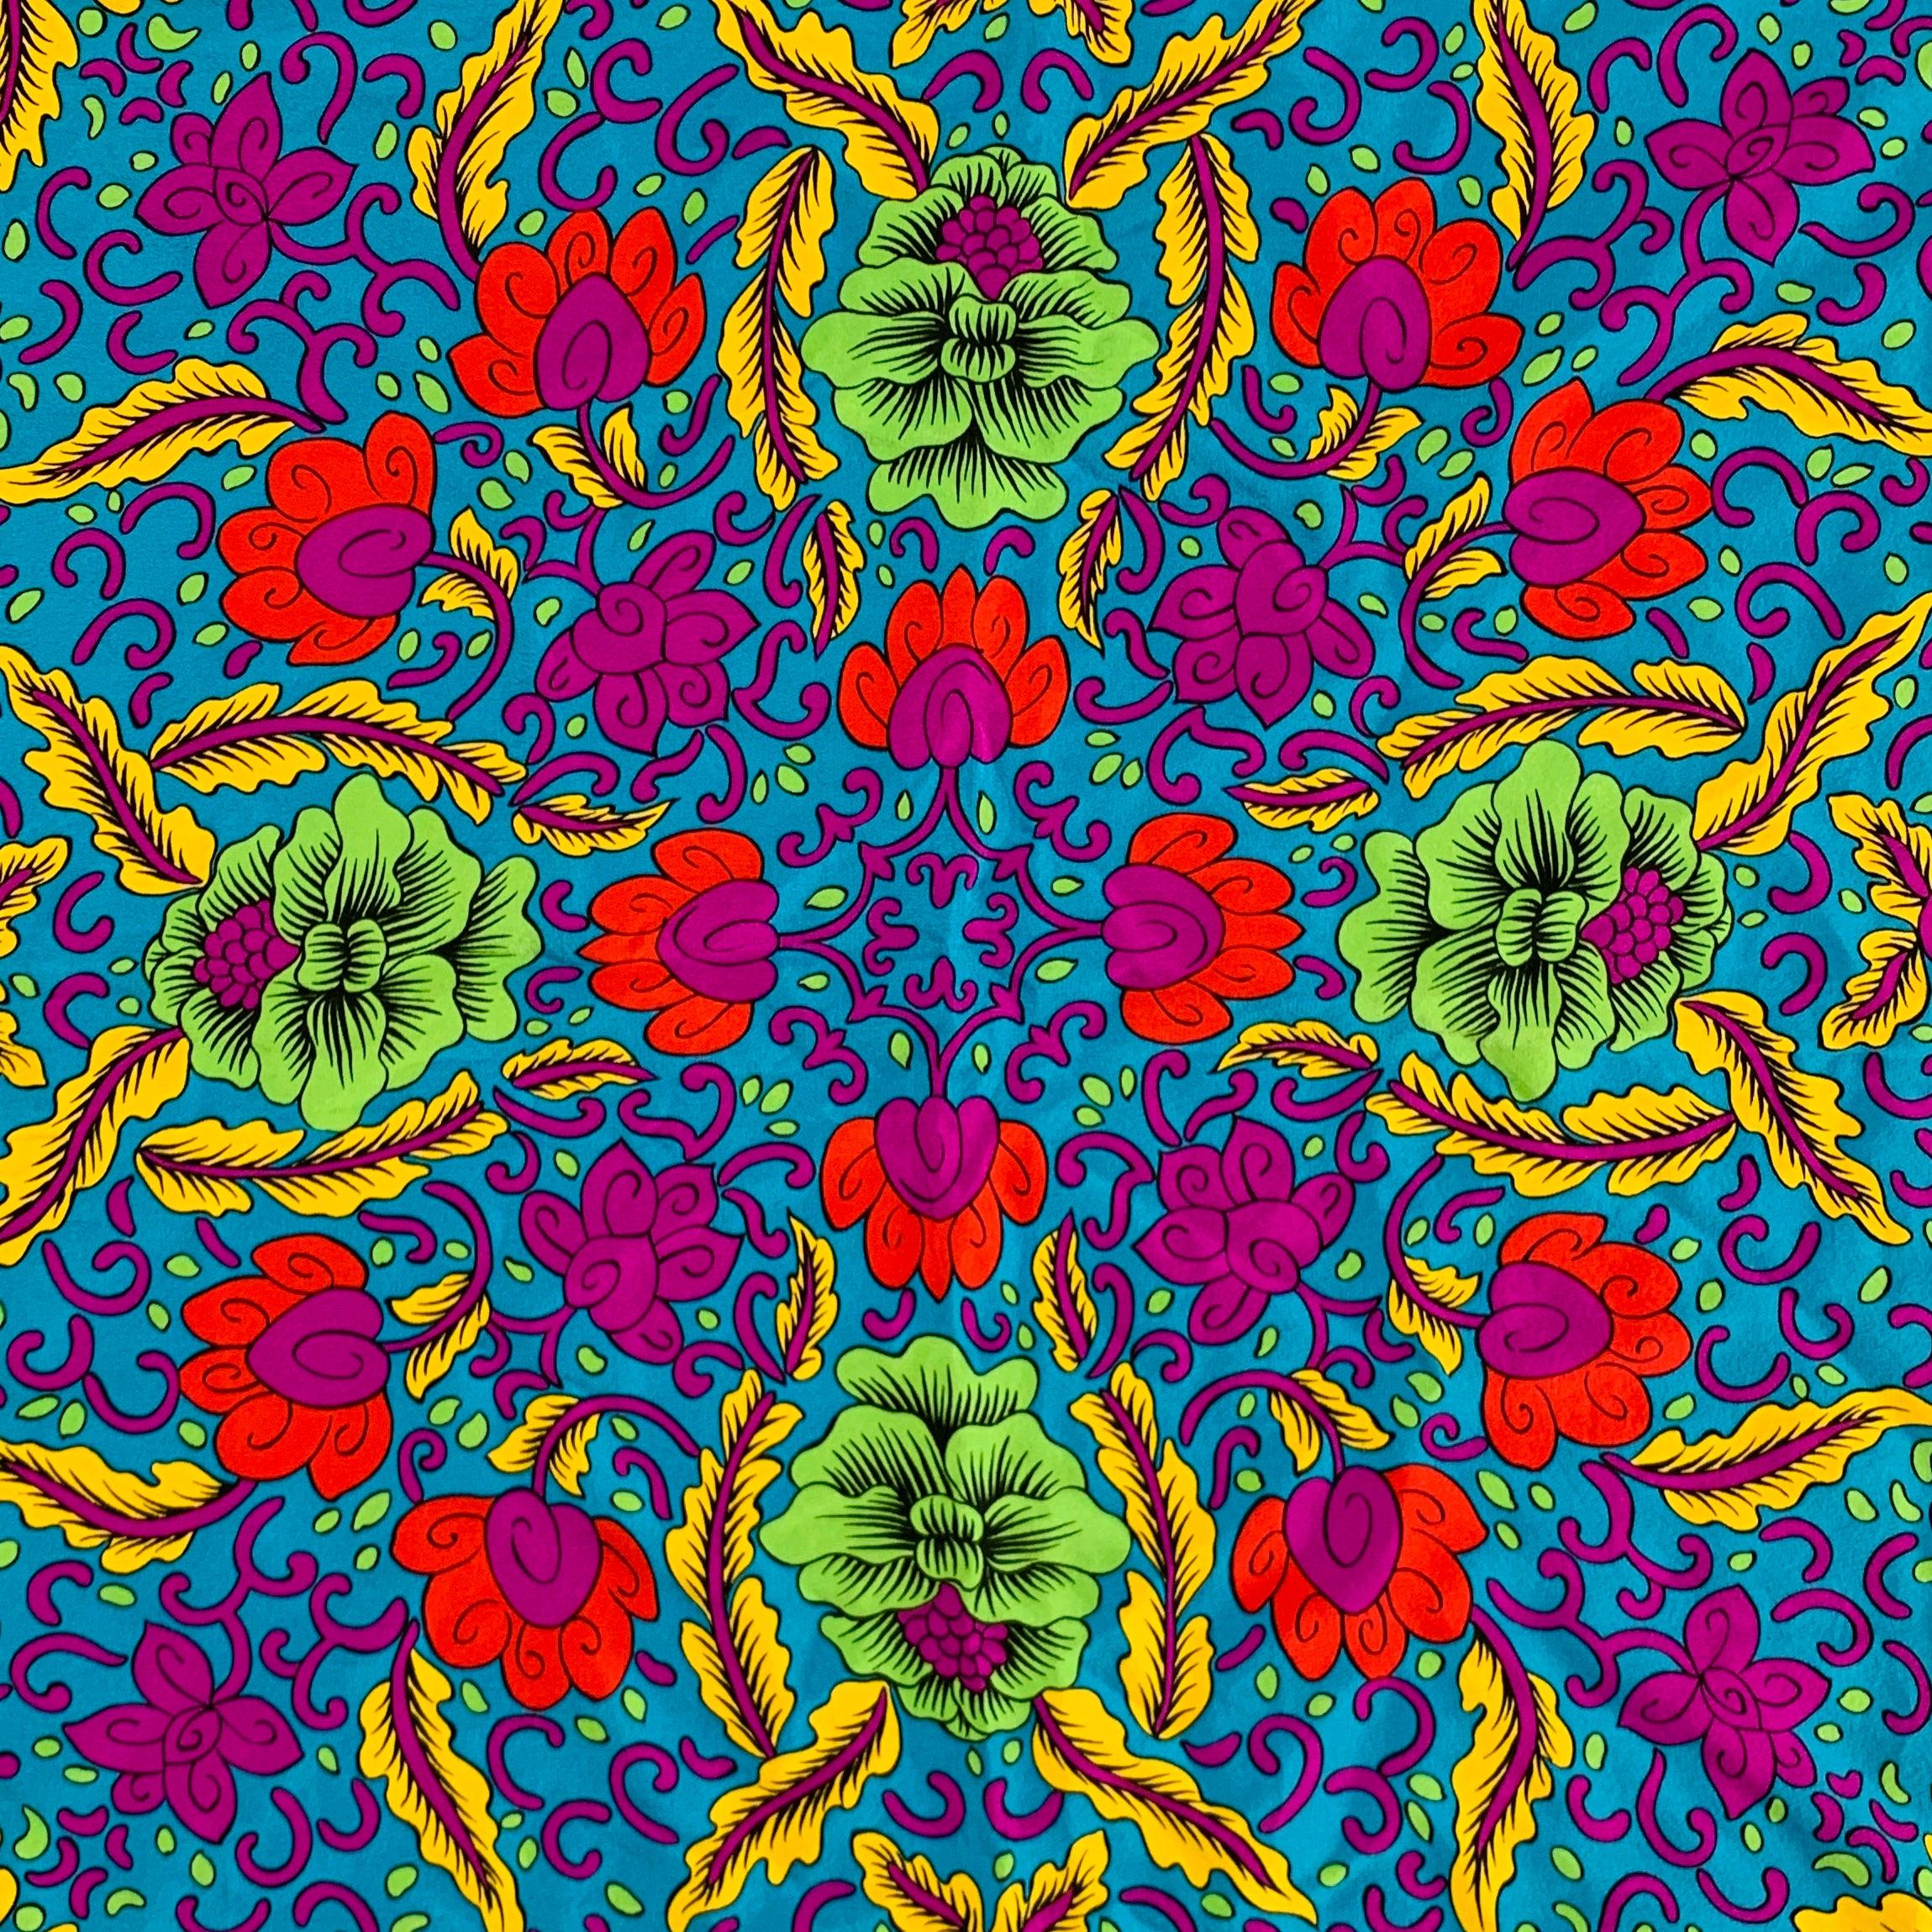 Écharpe YVES SAINT LAUREN
dans un tissu de soie multicolore présentant un motif floral vibrant et de luxueux bords roulés à la main.Bon état d'usage. Petite déchirure dans un coin. 

Mesures : 
  33,5 pouces  x 32.5 pouces 
  
  
 
Numéro de